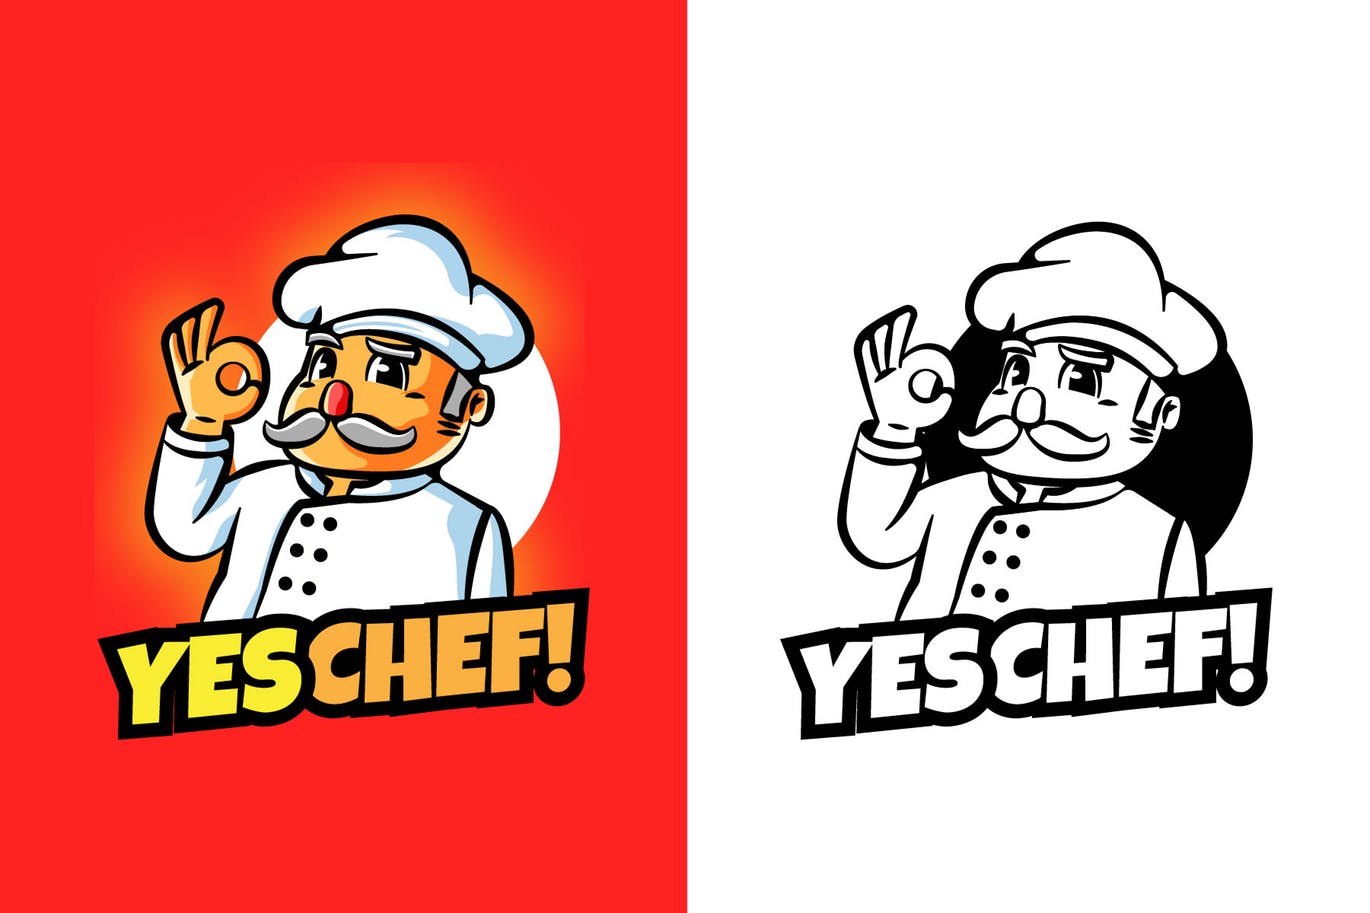 大厨卡通形象餐厅美食品牌Logo设计非凡图库精选模板 YES CHEF Mascot Logo插图